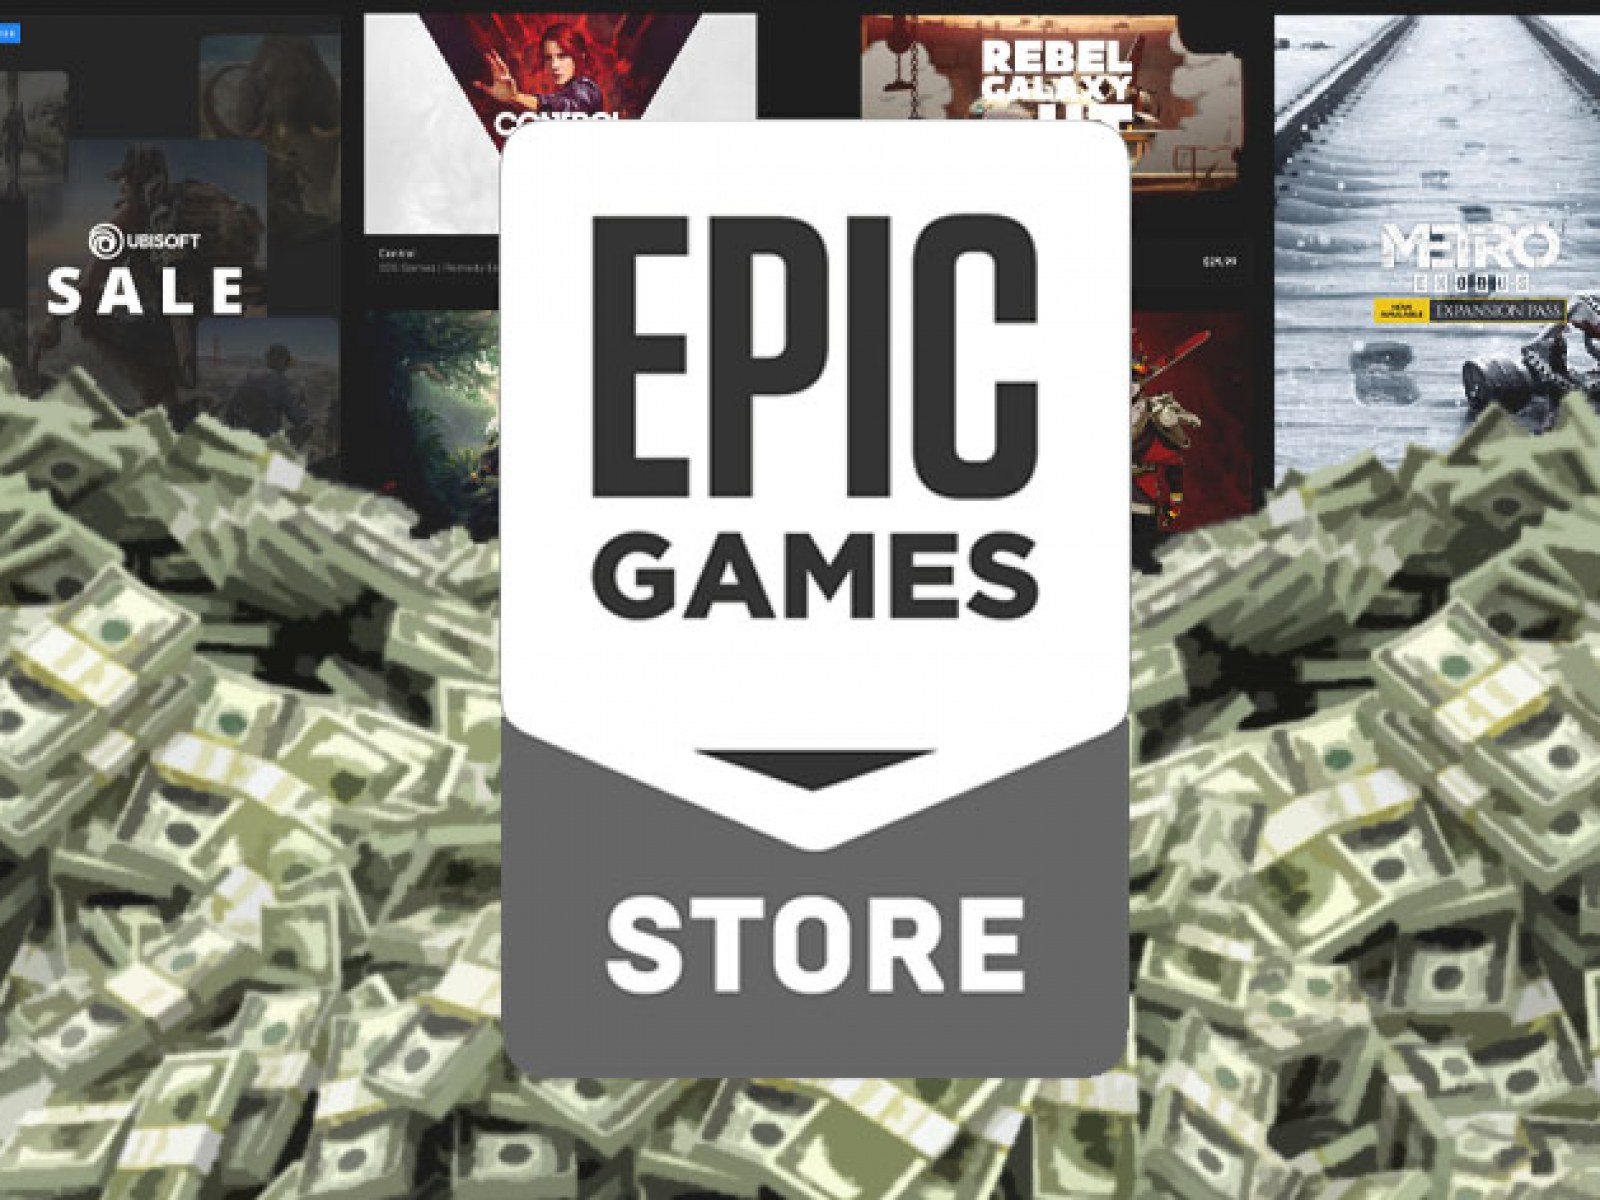 Thường xuyên phát tặng game miễn phí, Epic Store báo lỗ 5 năm liên tục - Ảnh 2.